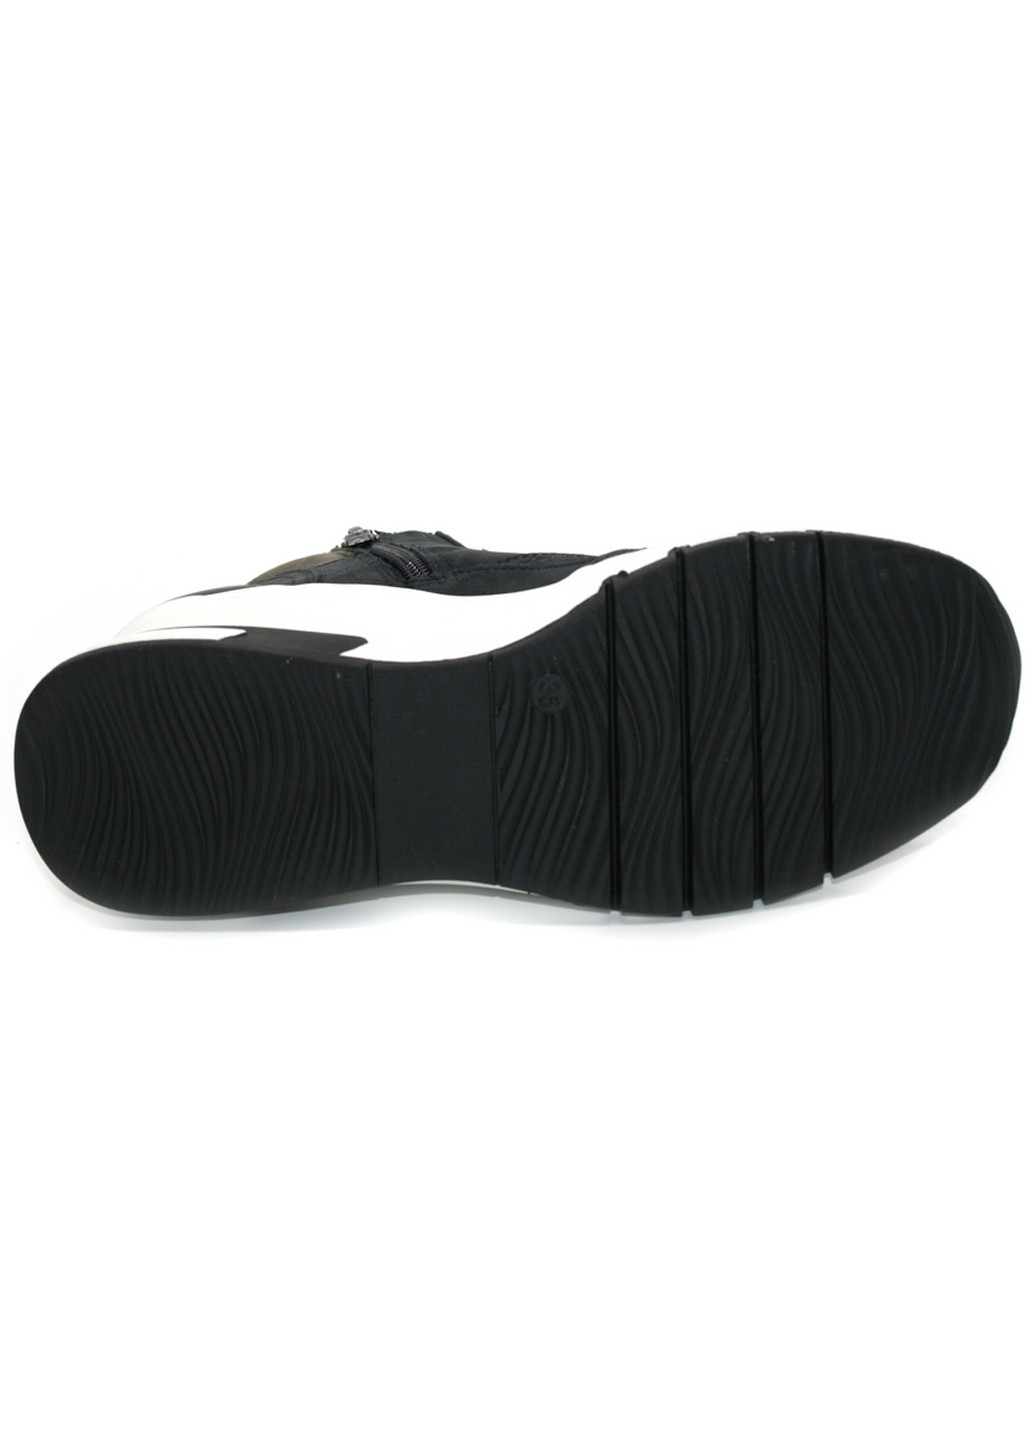 Осенние ботинки сникерсы Caprice со шнуровкой из натурального нубука